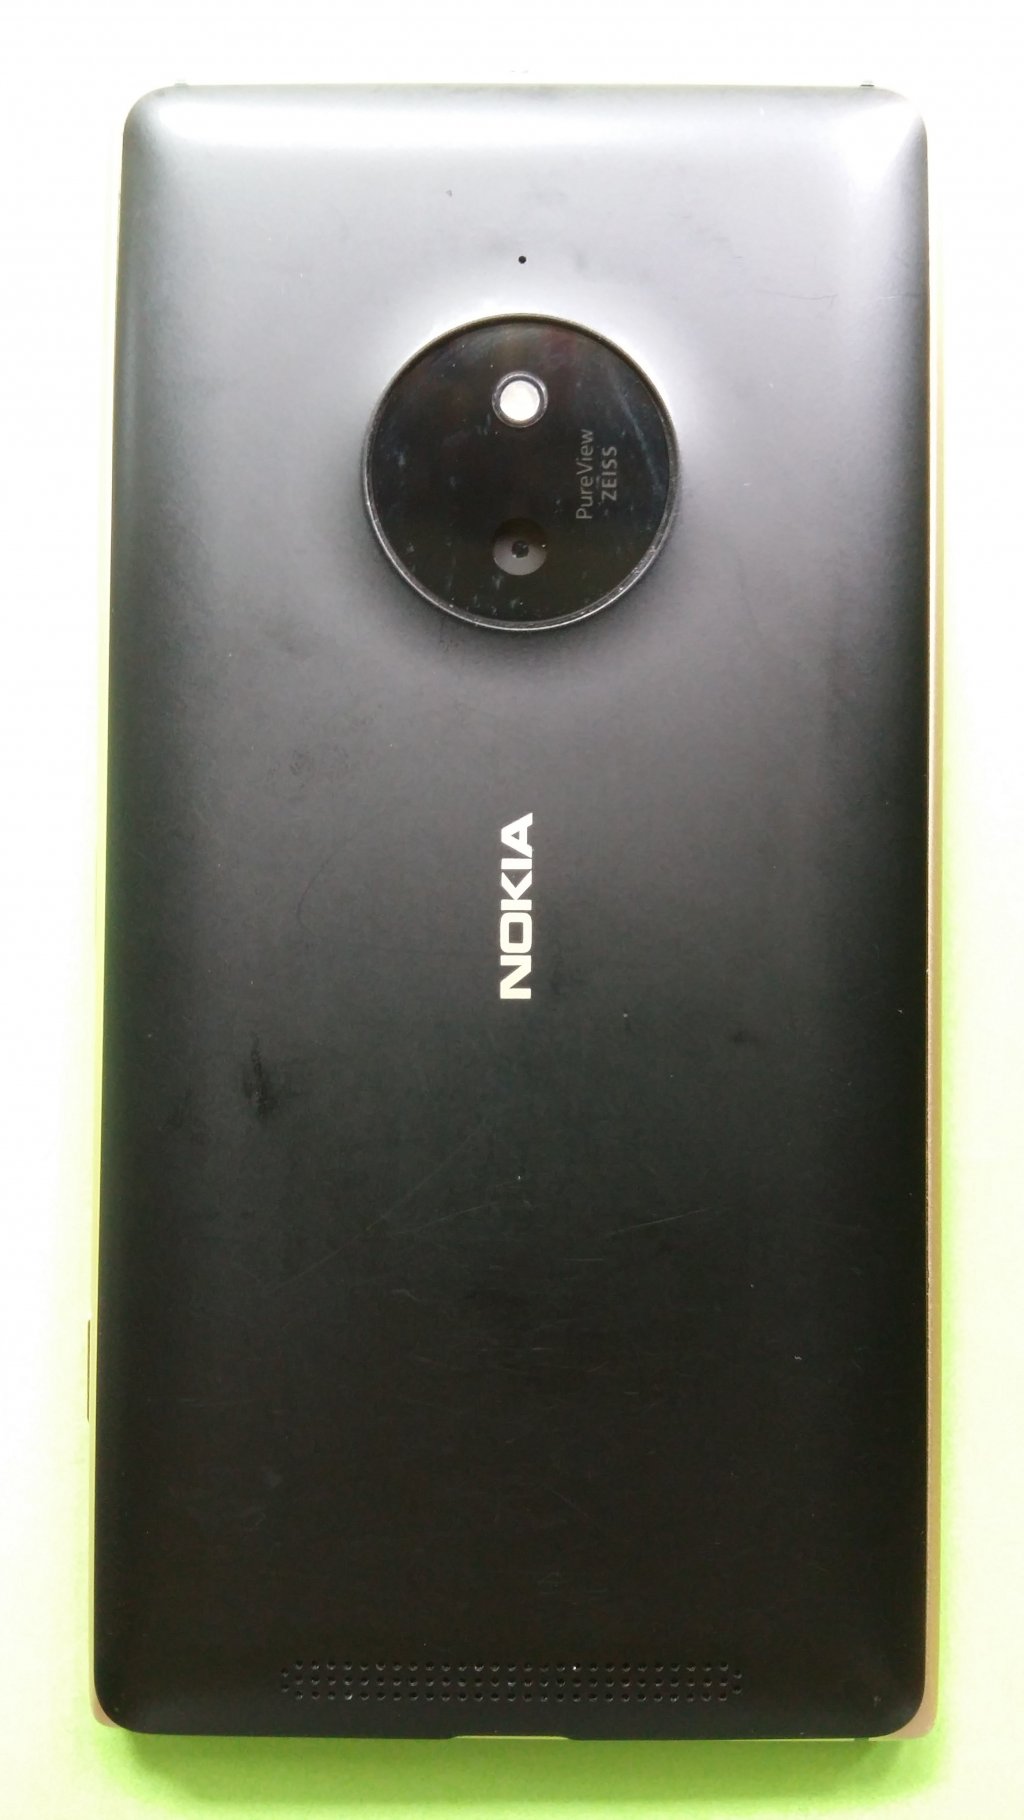 image-8337170-Nokia_830_Lumia_(1)2.w640.jpg